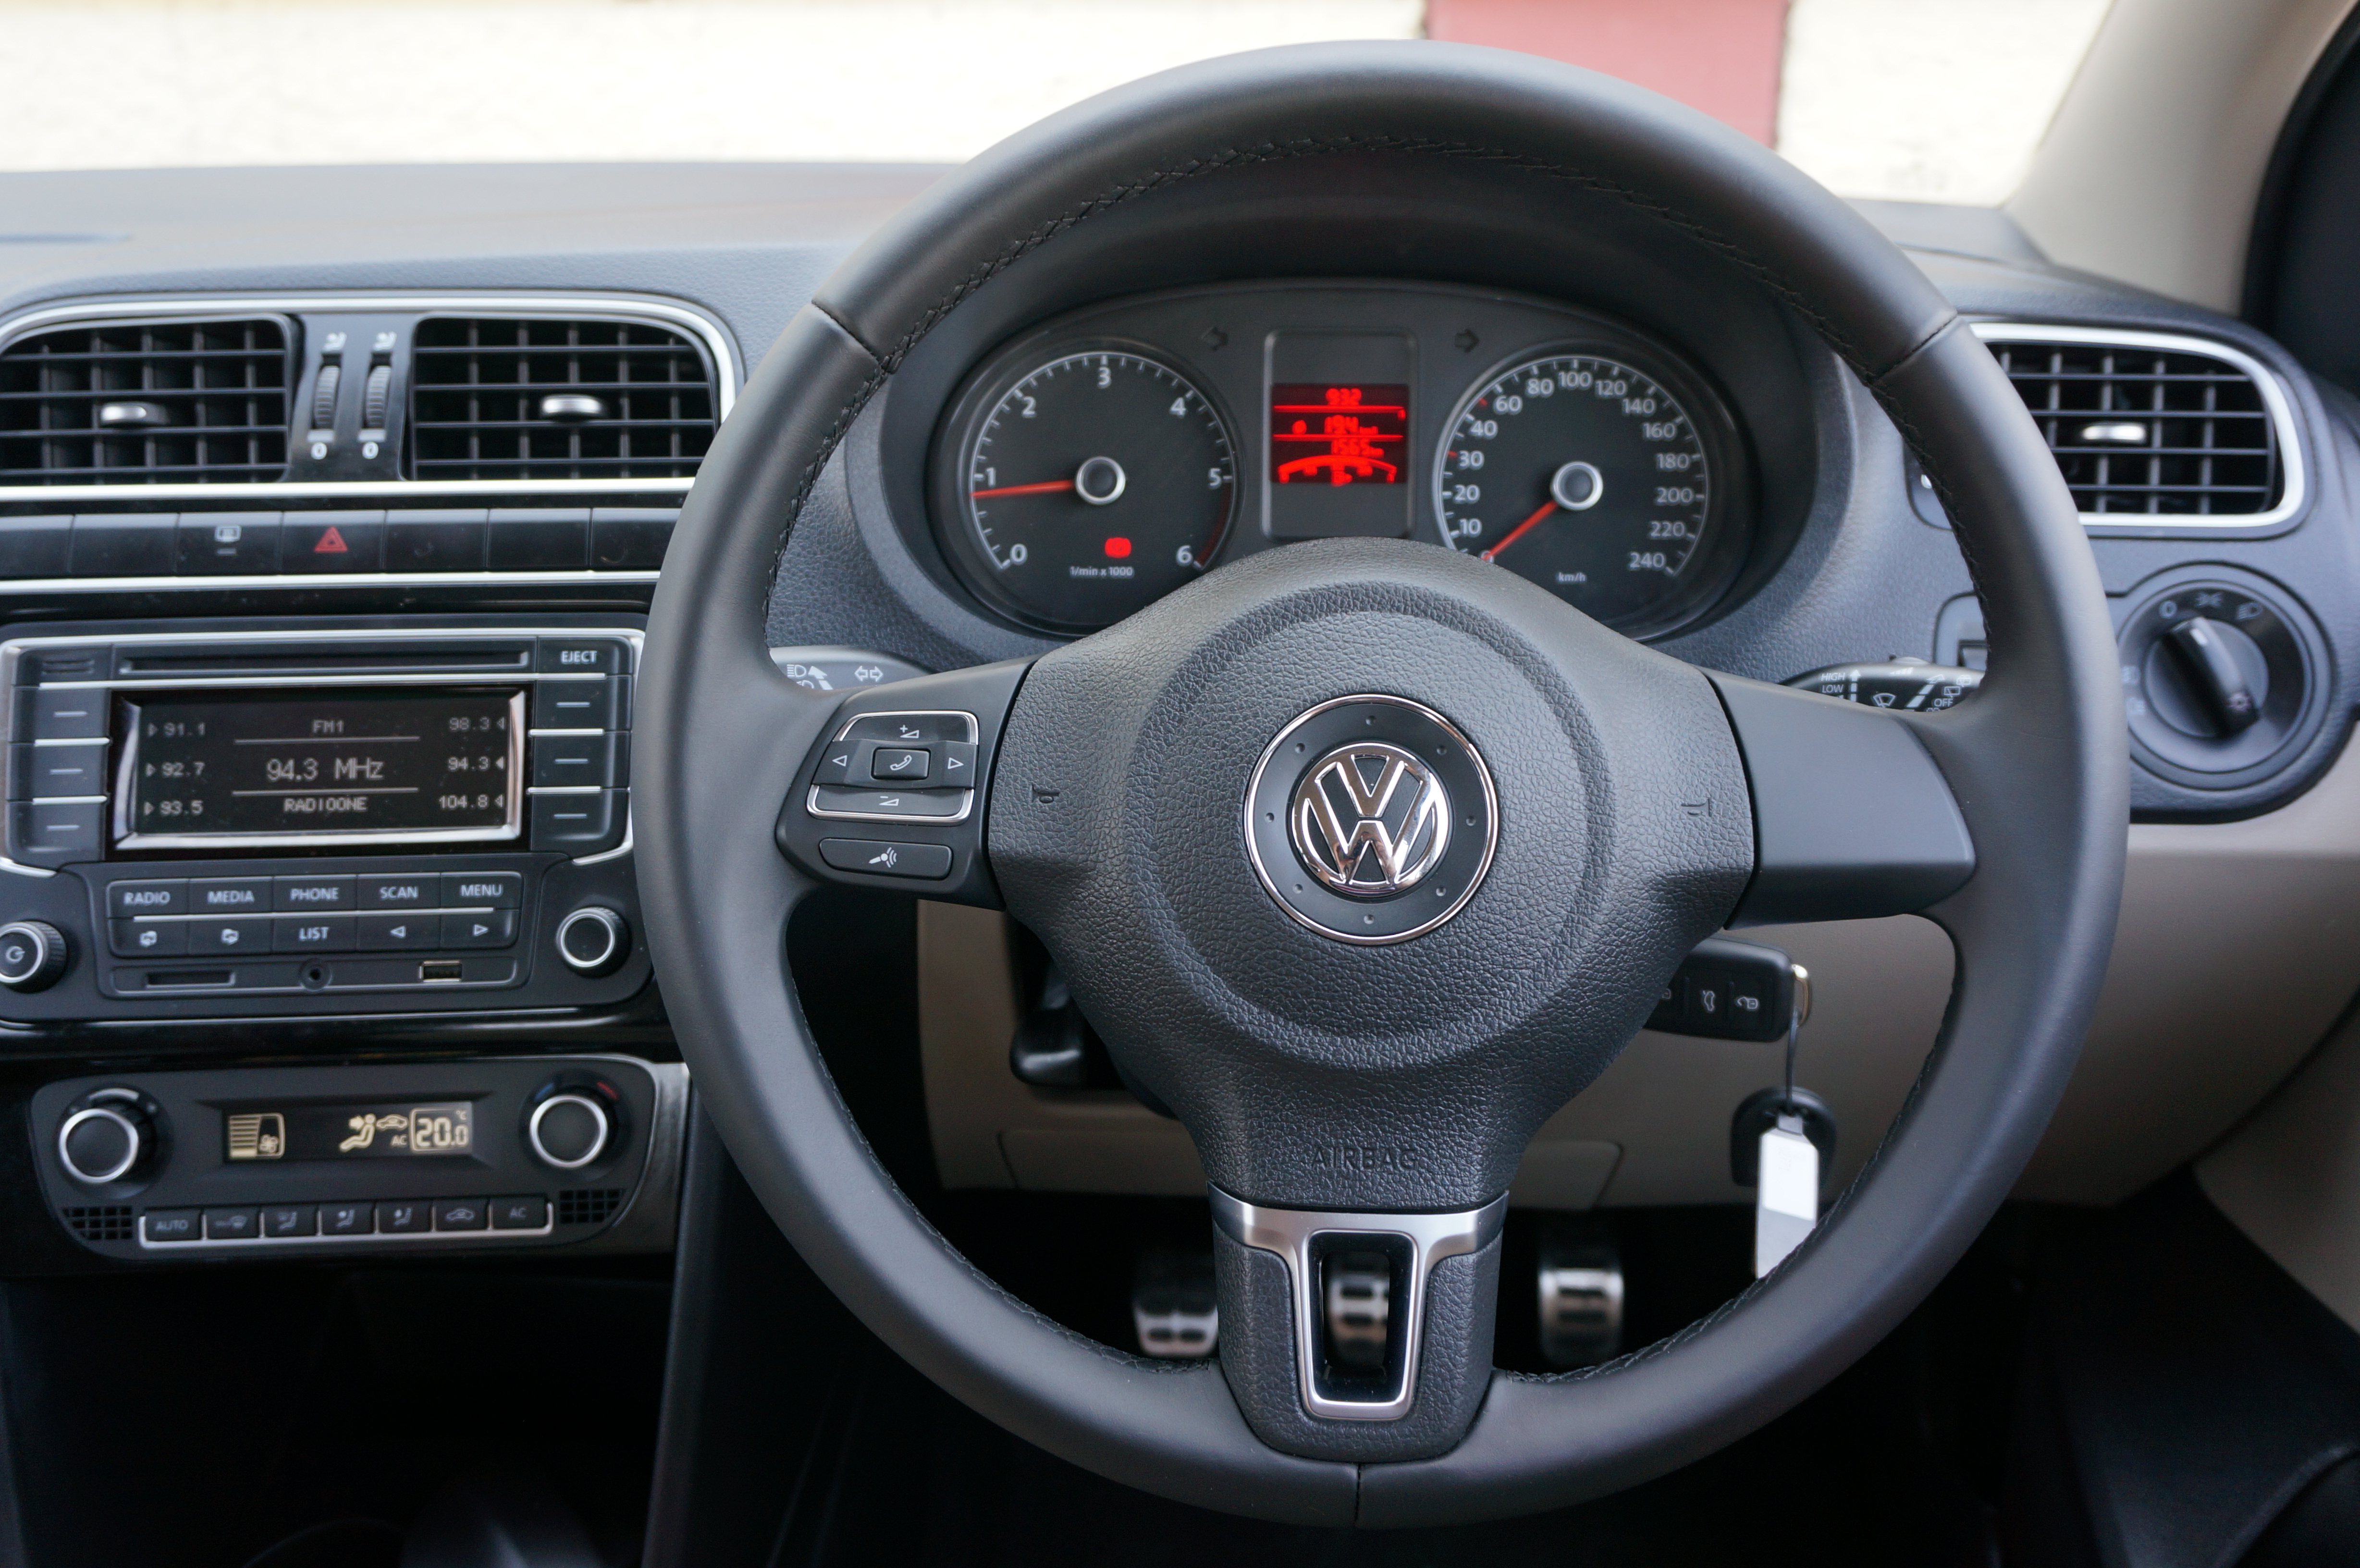 Volkswagen's smartphone app for customers